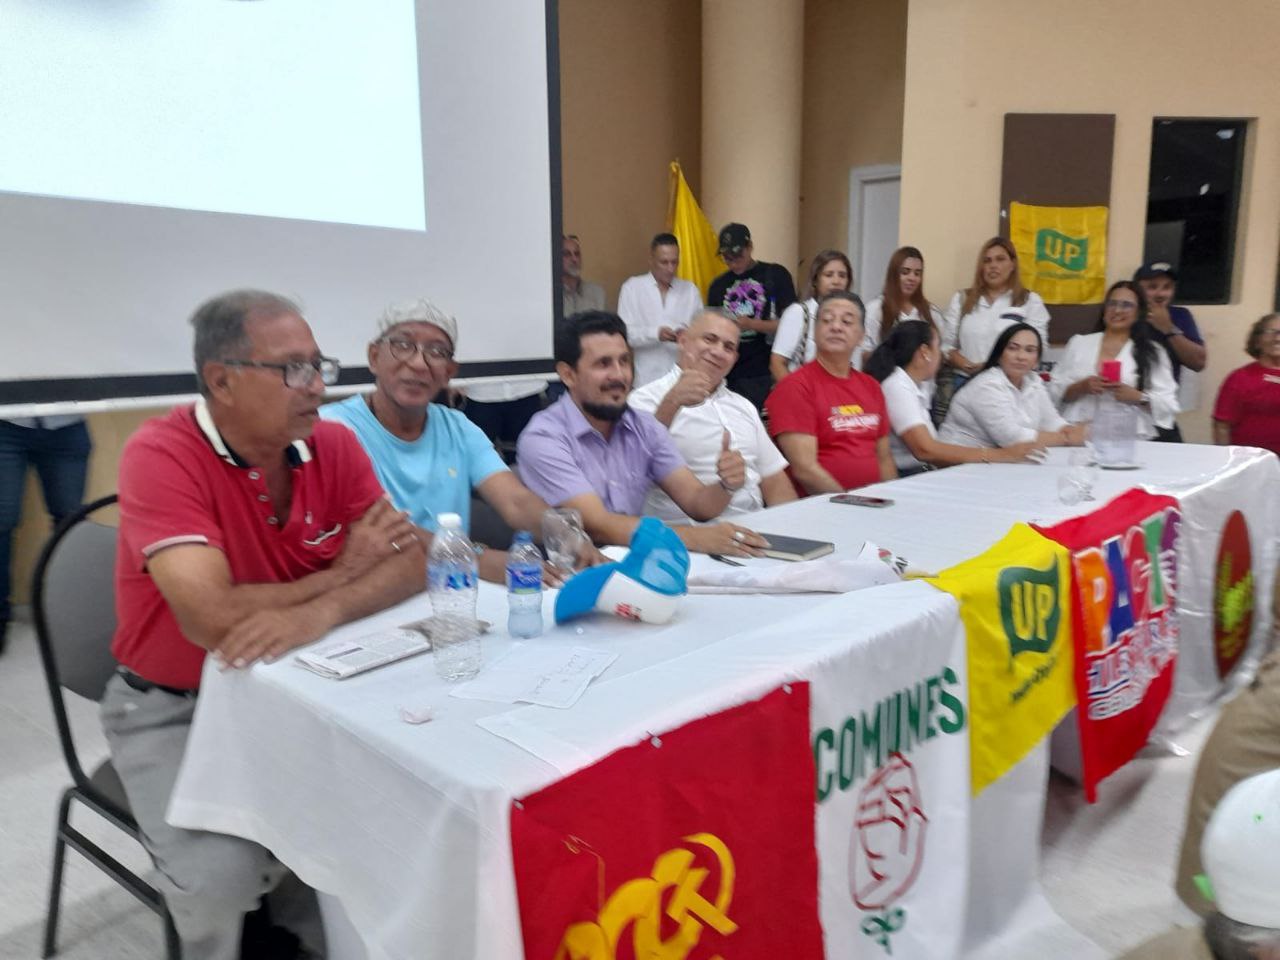 El sábado 11 de marzo de 2023 Máximo Noriega recibió el apoyo de una asamblea de organizaciones componentes del Pacto Histórico: Mais, UP, Comunes, Partido Comunista y sectores de Colombia Humana.